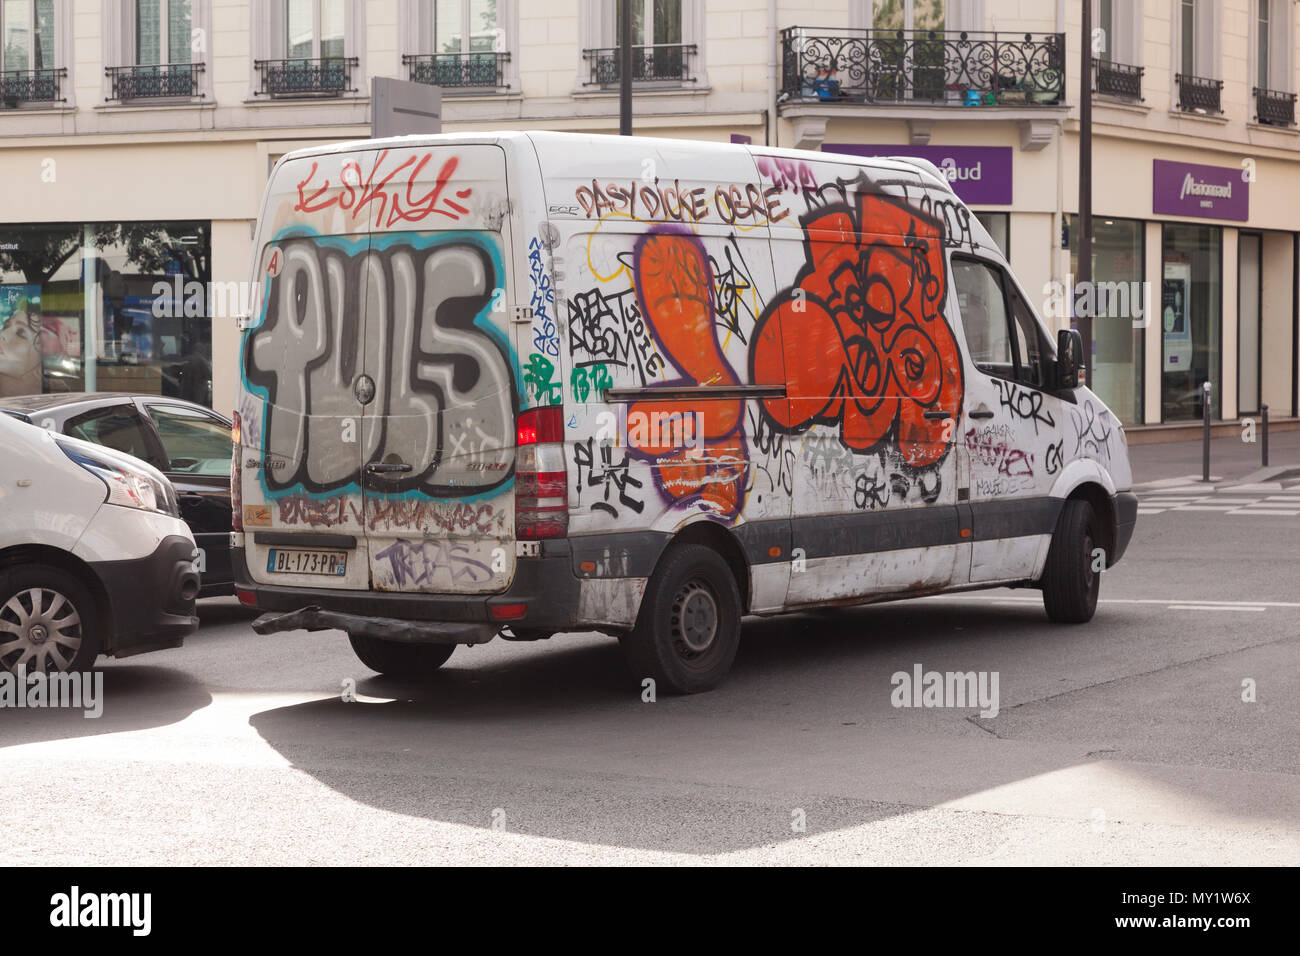 Couverts de graffitis van, rue de Crimée, Paris, France, Europe. Banque D'Images